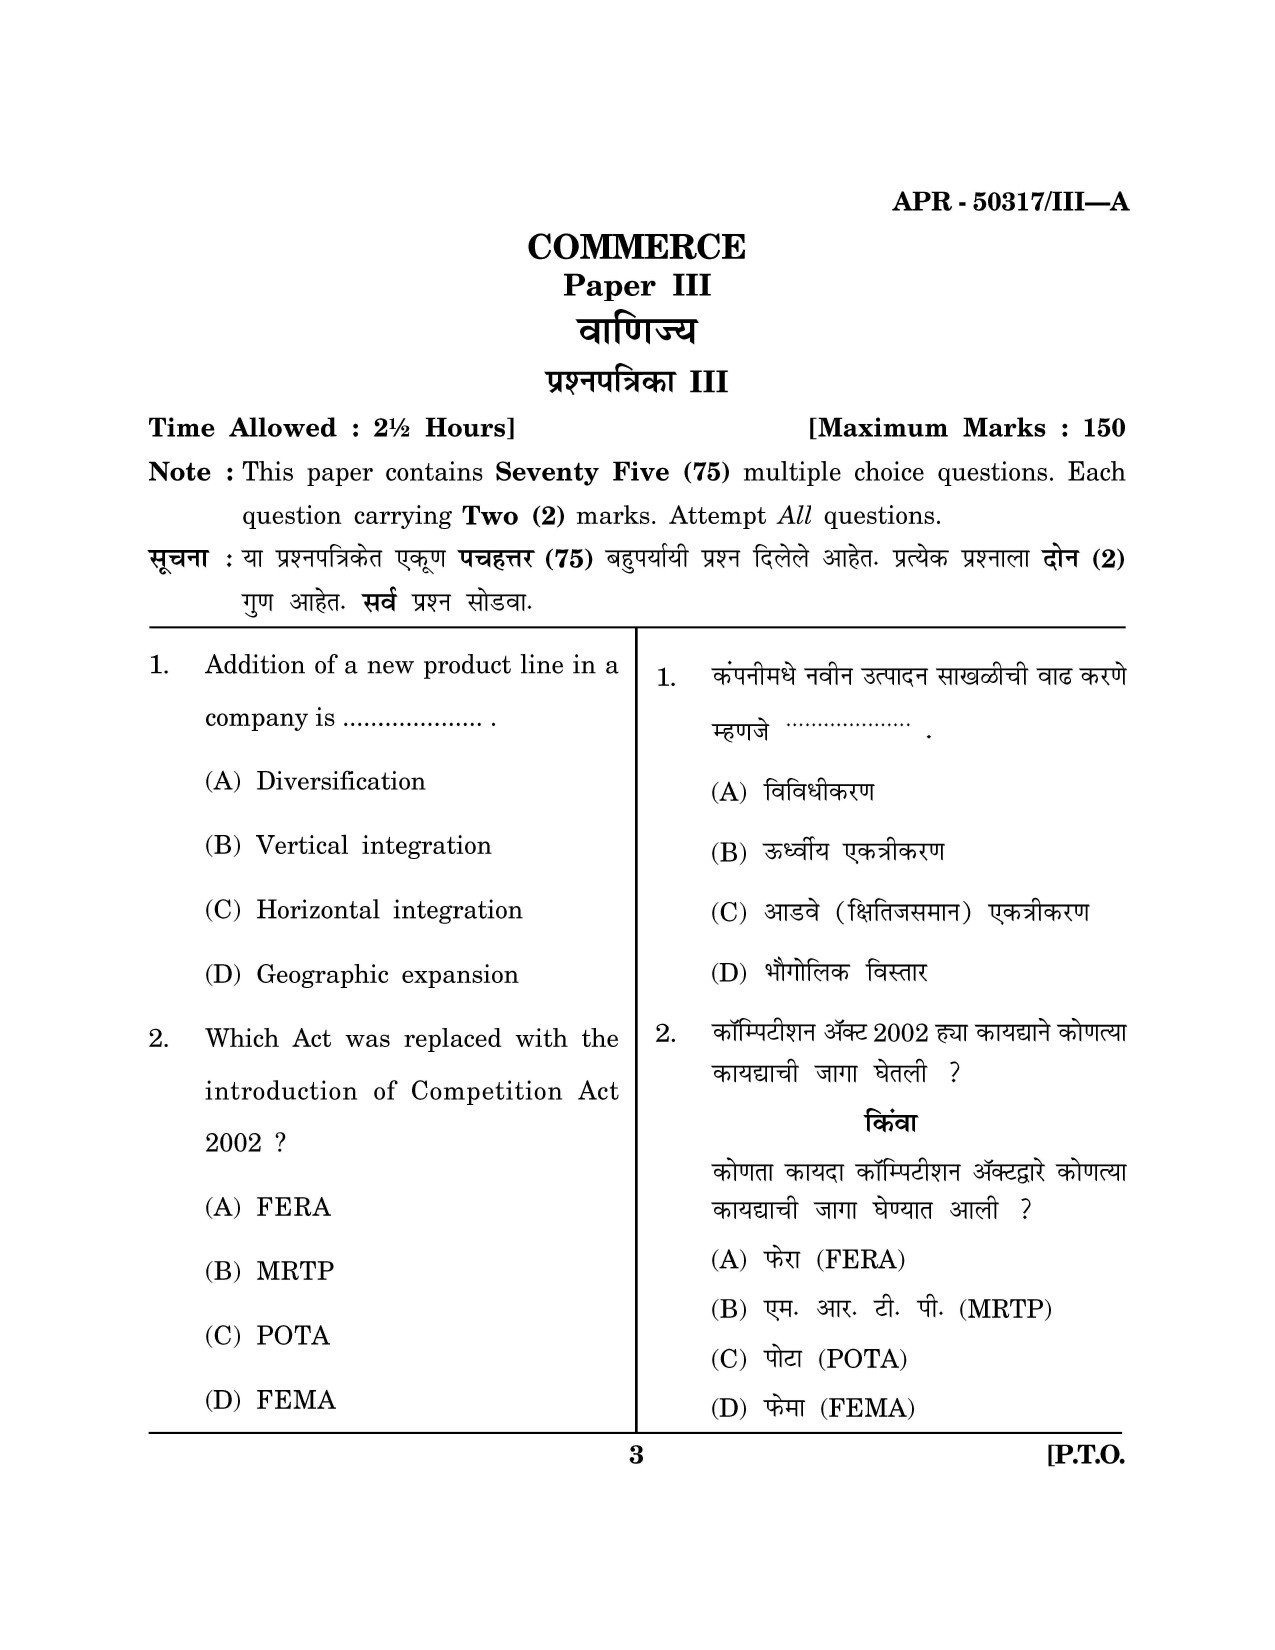 Maharashtra SET Commerce Question Paper III April 2017 2